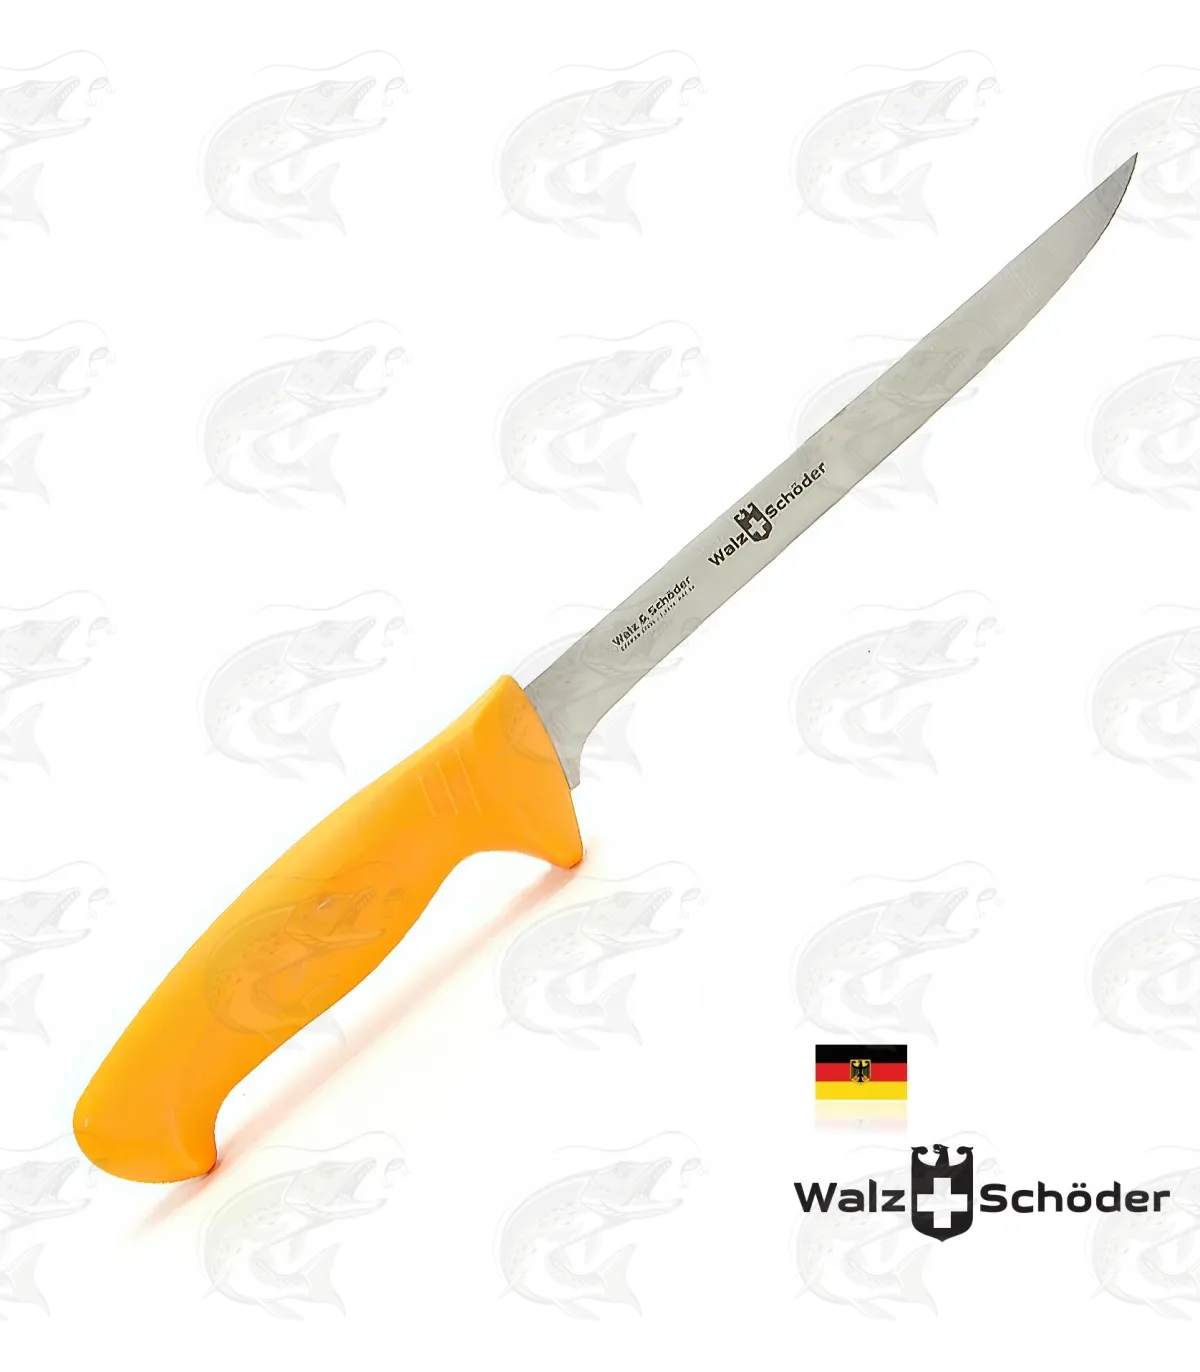 Walz & Schöder Fish Filleting Knife / Boner 203 mm (8'')